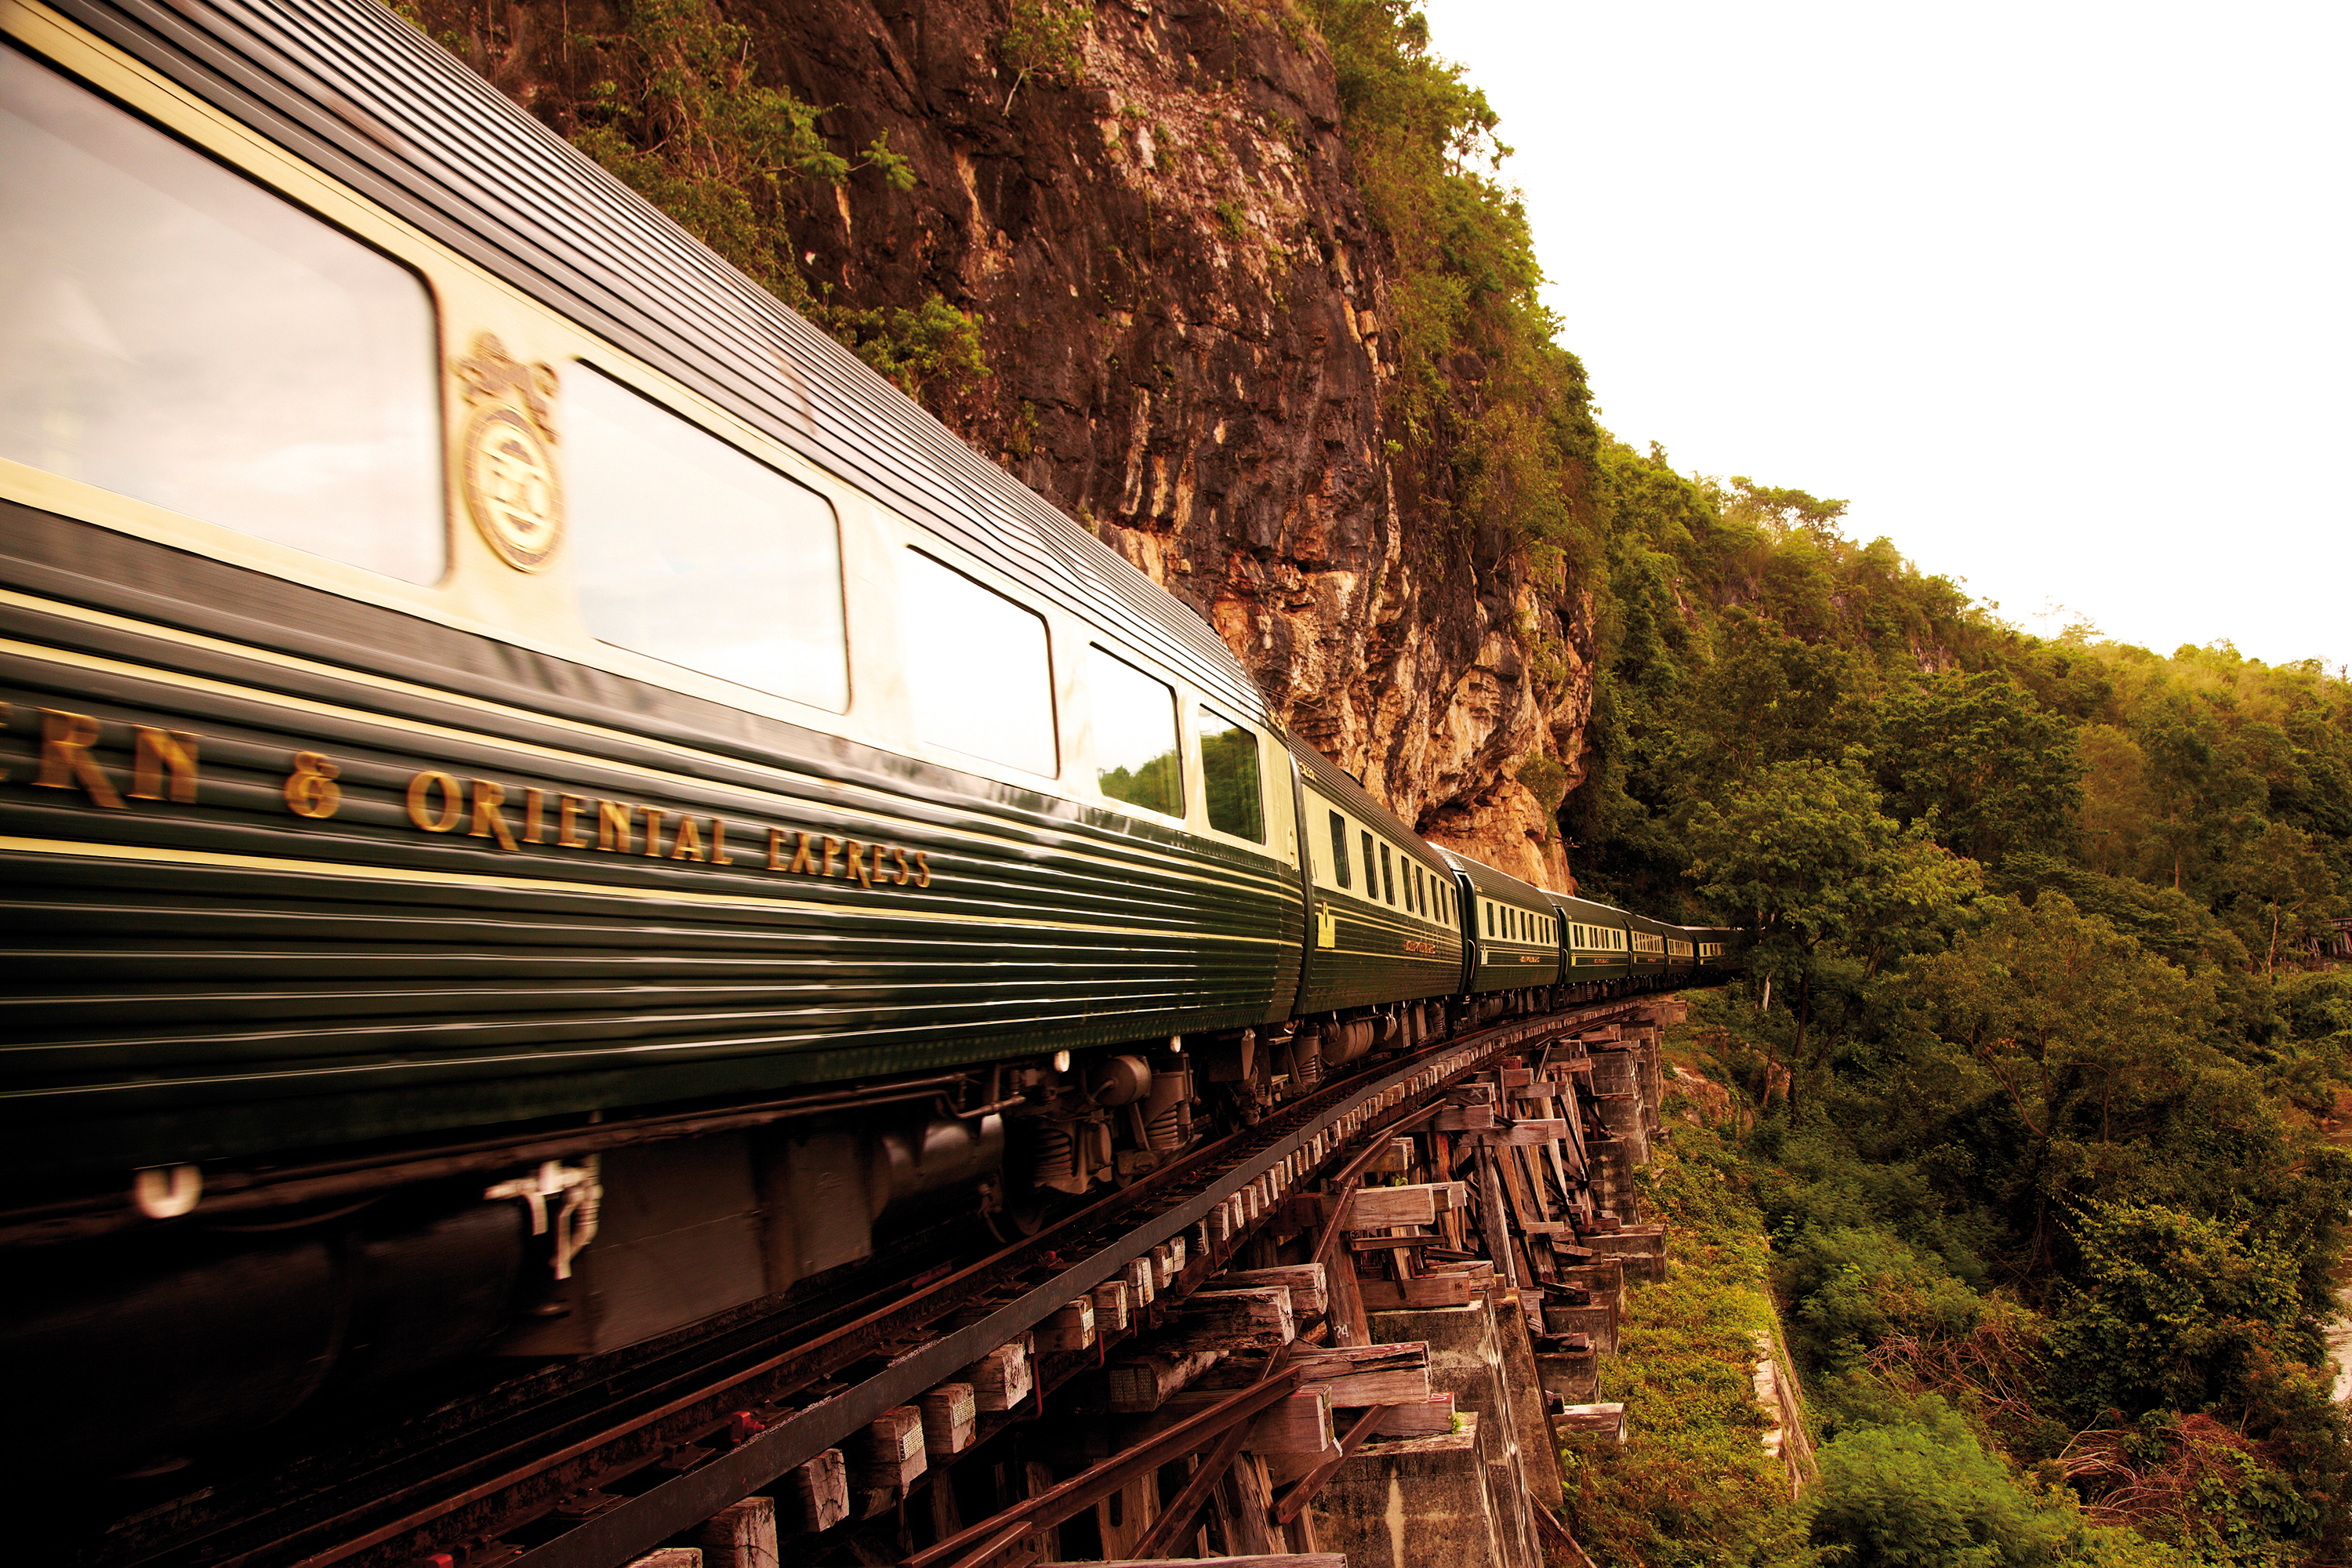 Путешествие на поезде на английском. Поезд Eastern & oriental Express. Eastern & oriental Express (Таиланд / Сингапур). Туристический поезд Сингапур-Тайланд. Orient Express поезд.